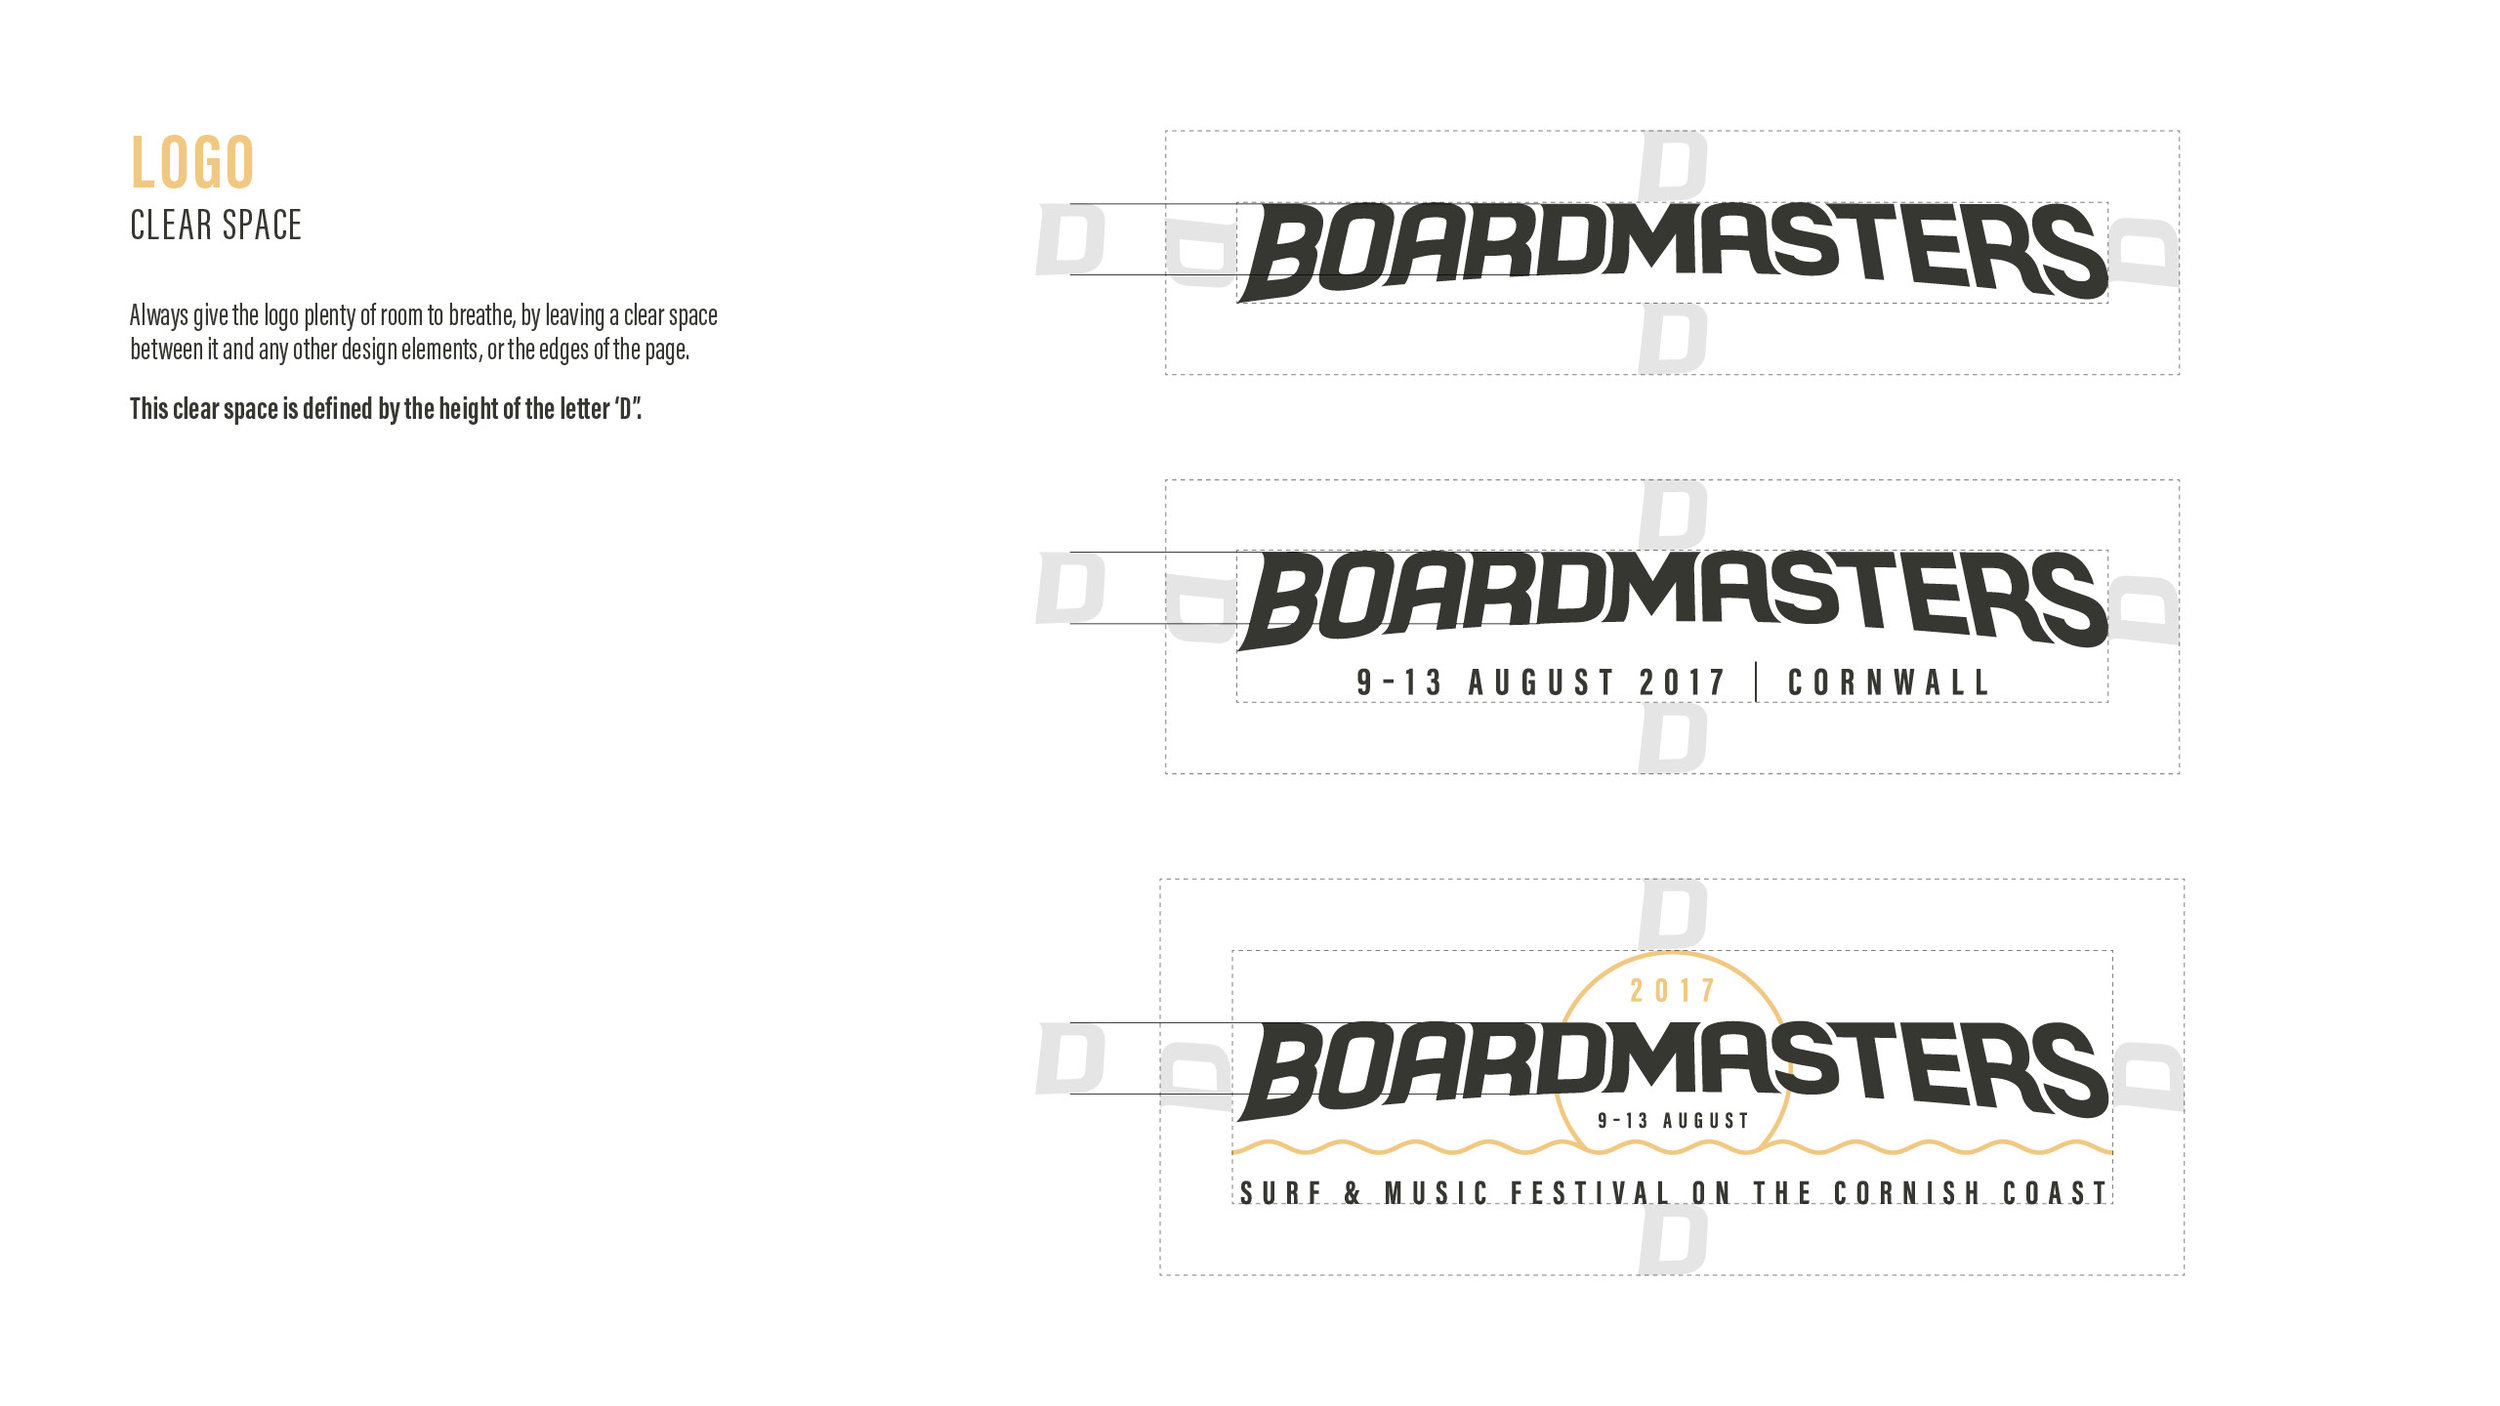 Boardmasters_2017_Style Guide_16Feb176.jpg